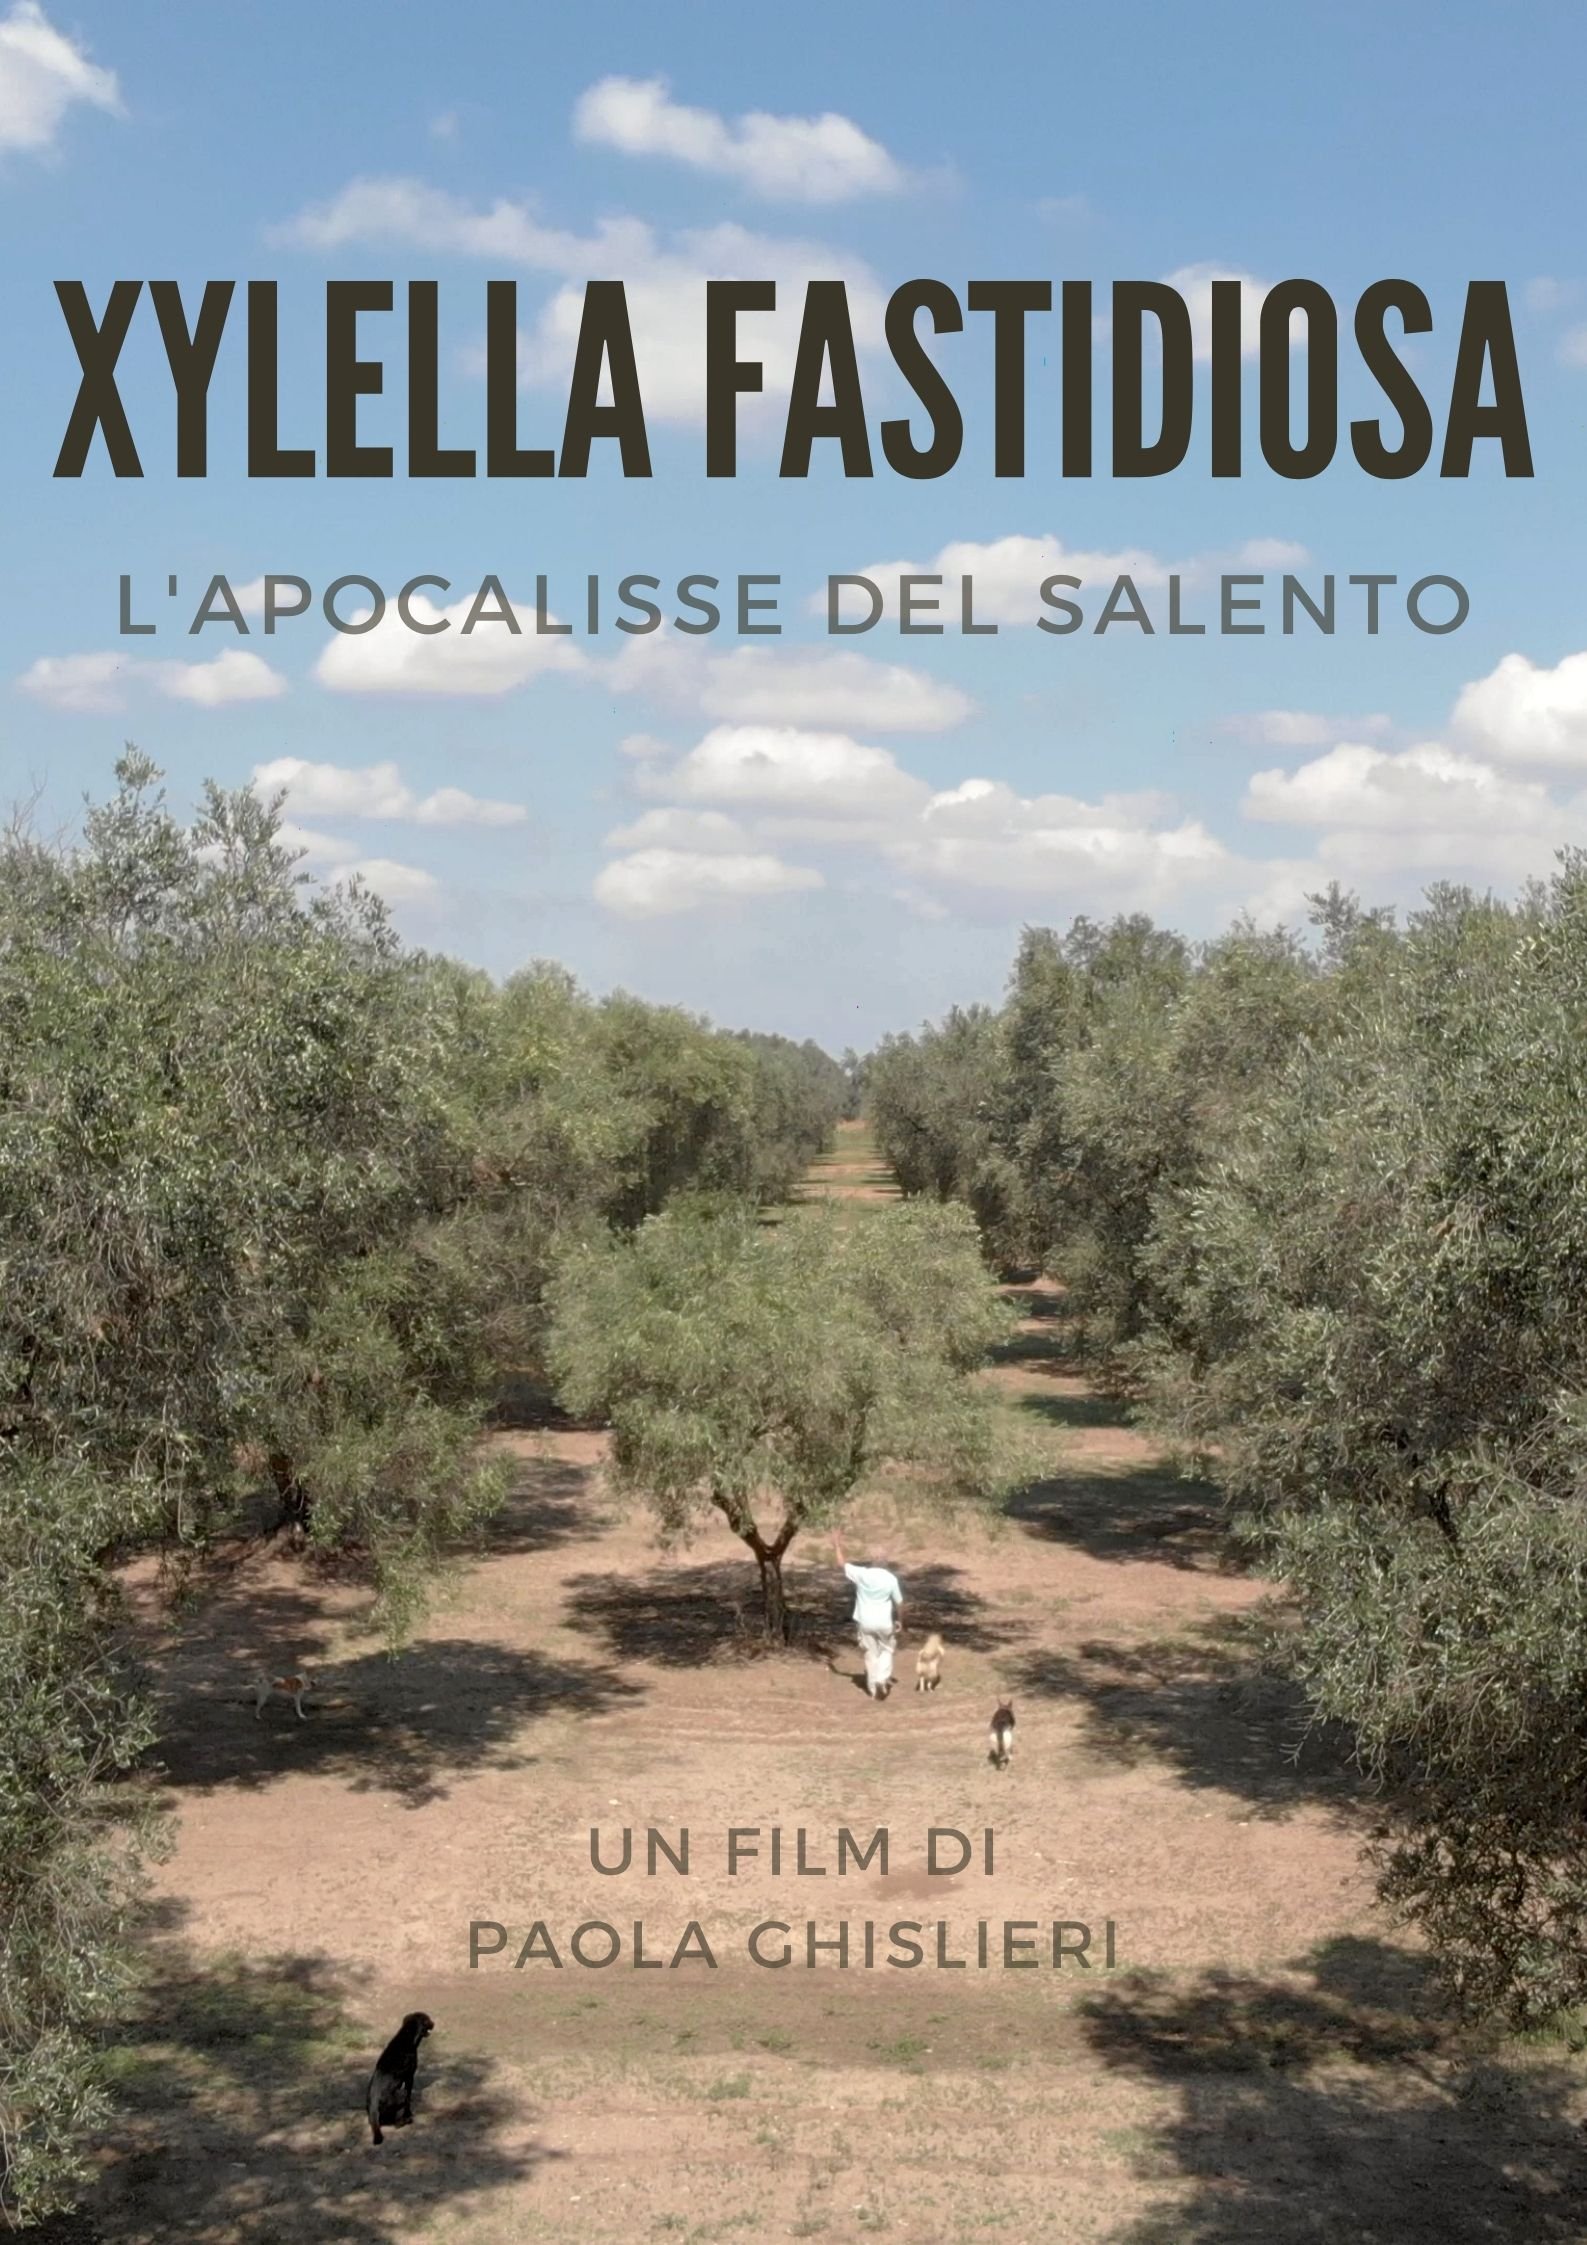 L’apocalisse del Salento, un cortometraggio di Paola Ghislieri sulle devastanti conseguenze della Xylella